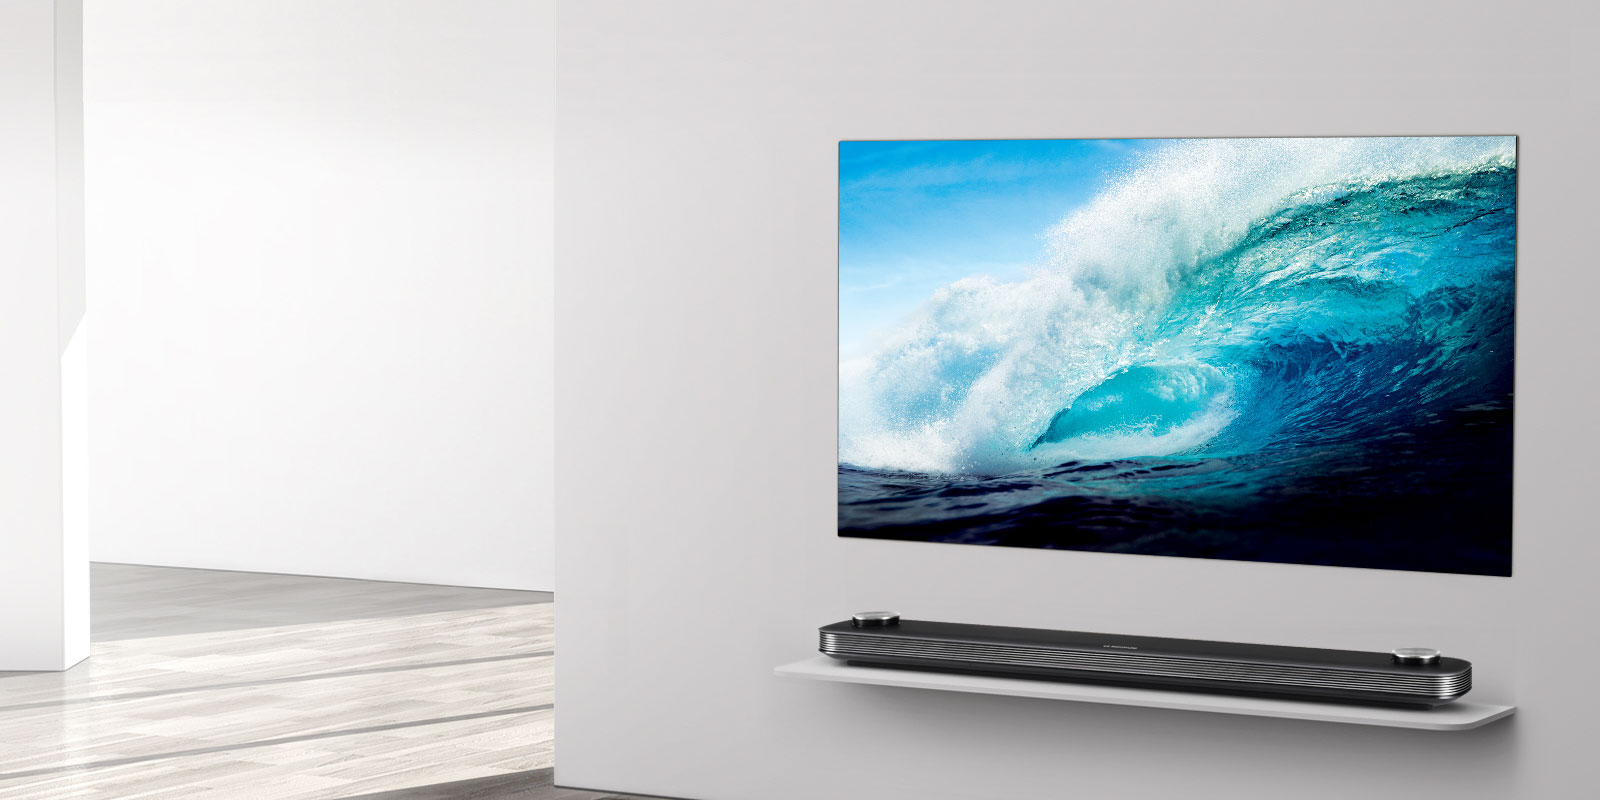 Los nuevos televisores de LG van de los 20,000 a los 800,000 pesos